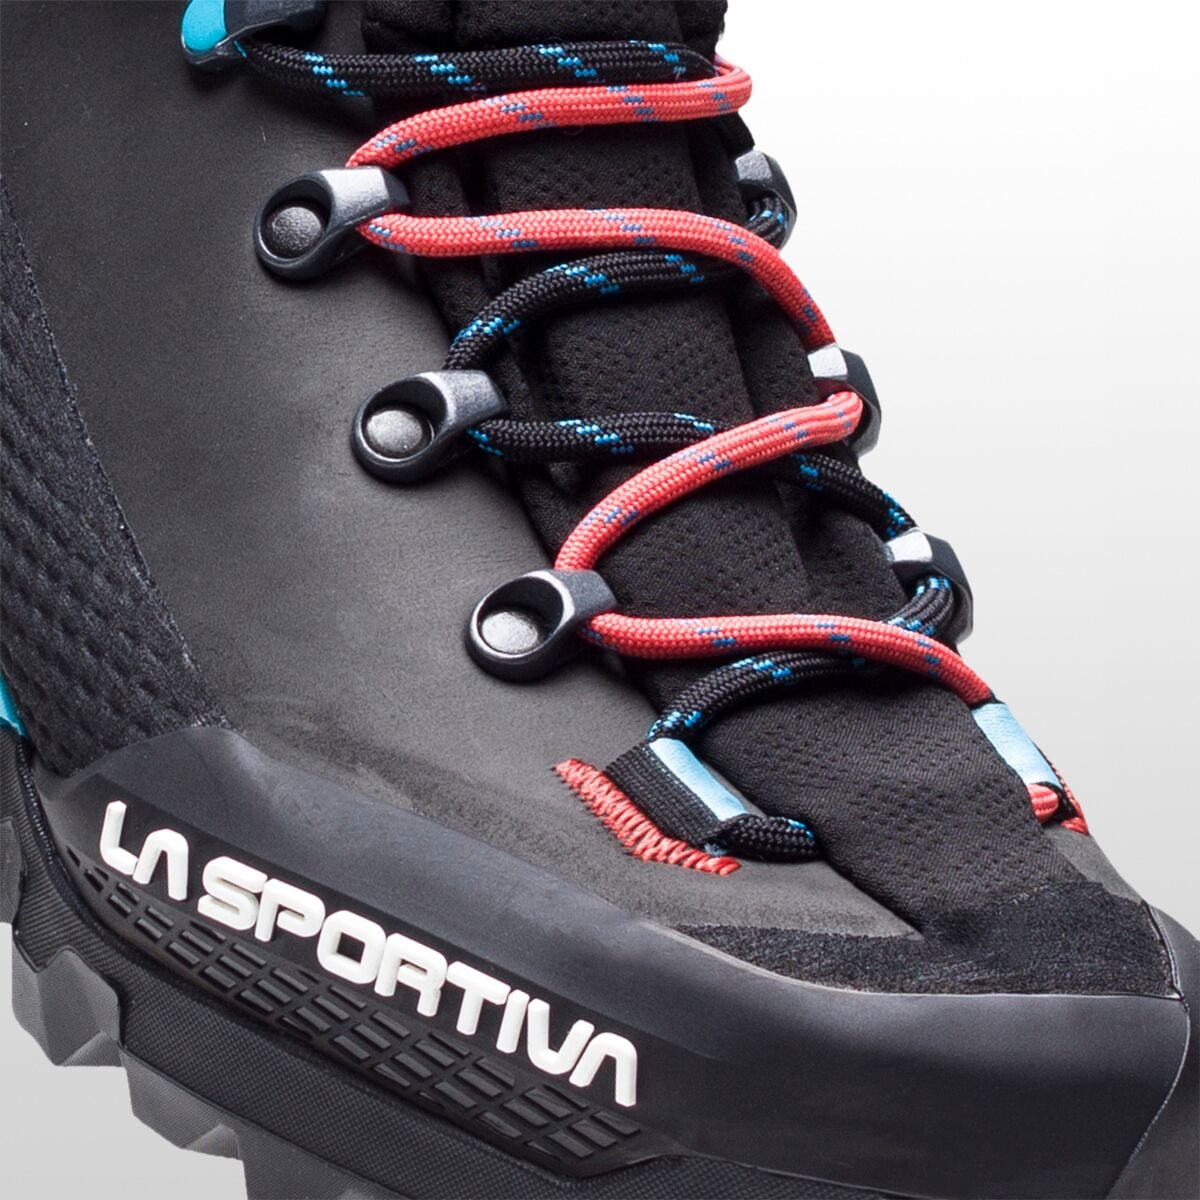 La Sportiva Aequilibrium LT GTX Mountaineering Boot